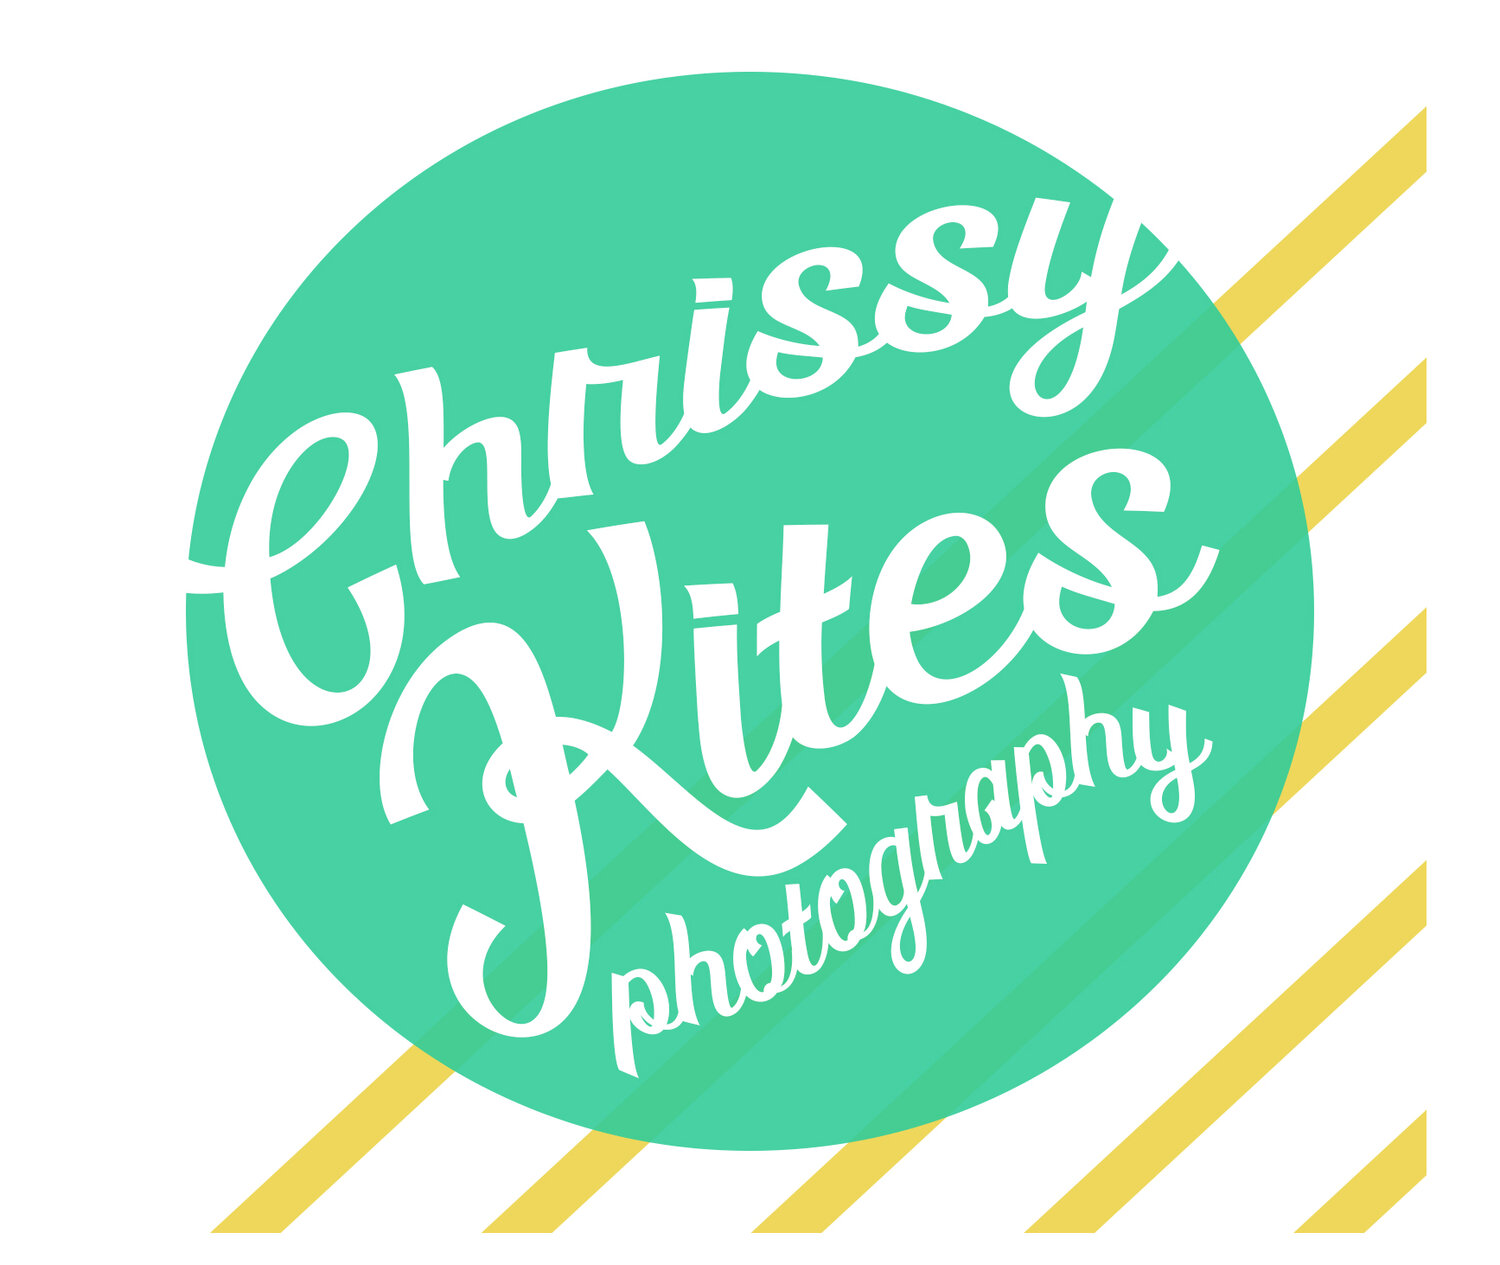 Chrissy Kites Photography